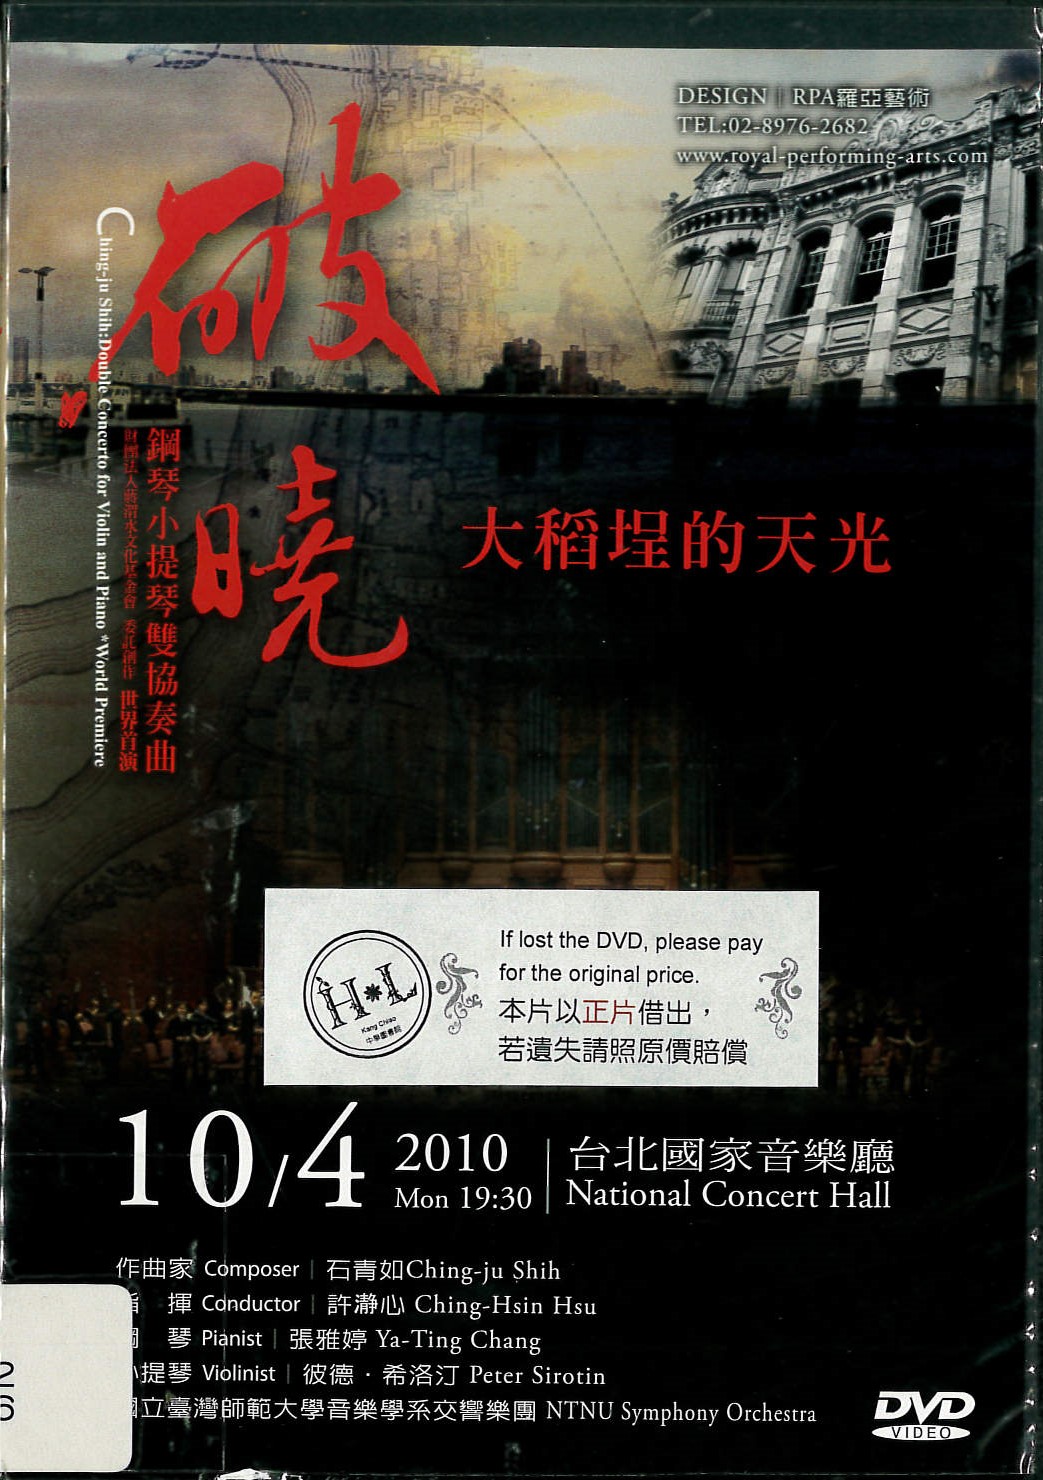 破曉:大稻埕的天光 = : Ching-ju shih:Double Concero for Violin and Piano*World Premiere : 鋼琴小提琴雙協奏曲